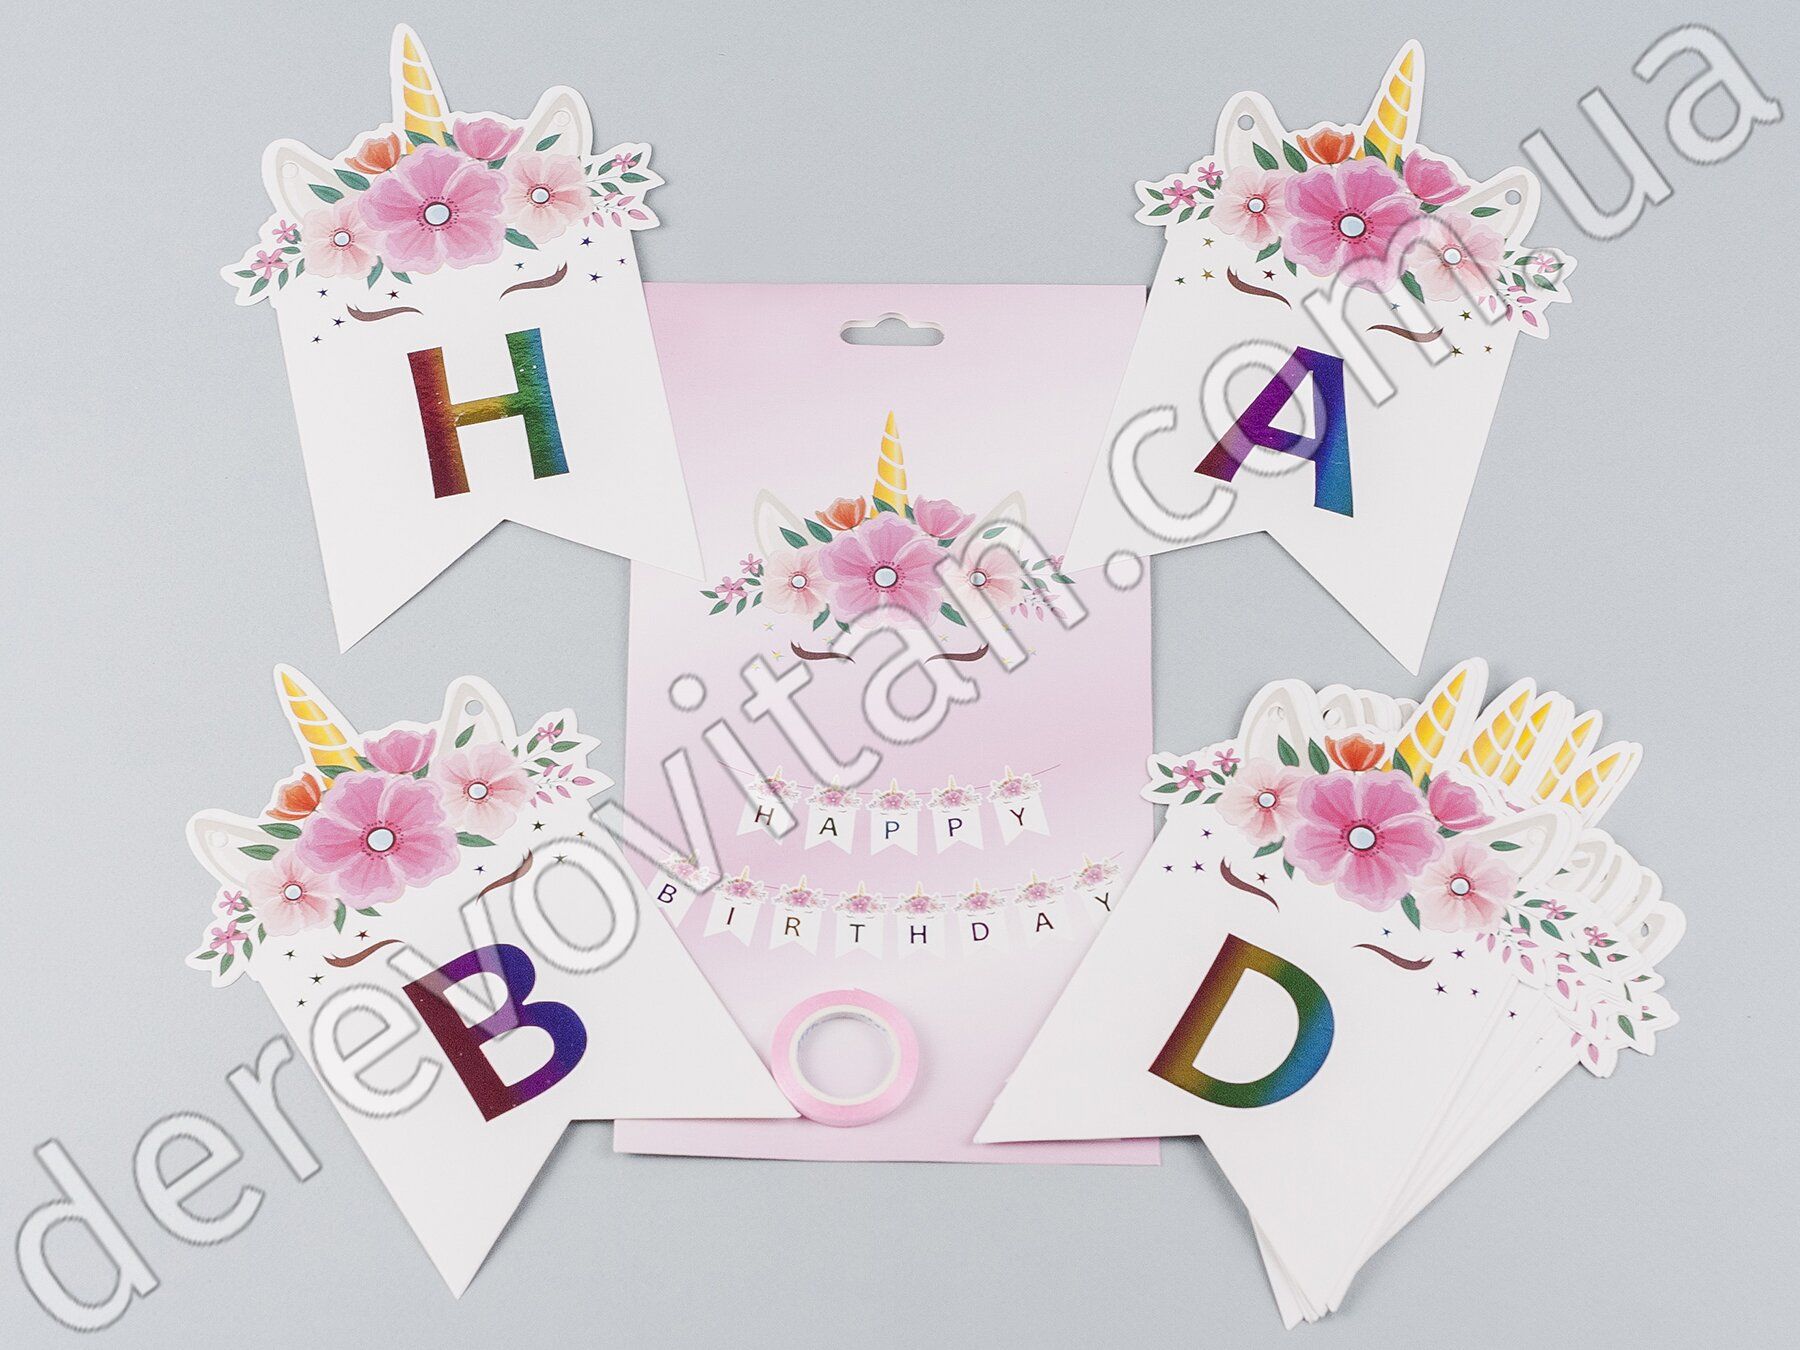 Гирлянда "Happy Birthday" из флажков с декором Единорог, белая, 2 м